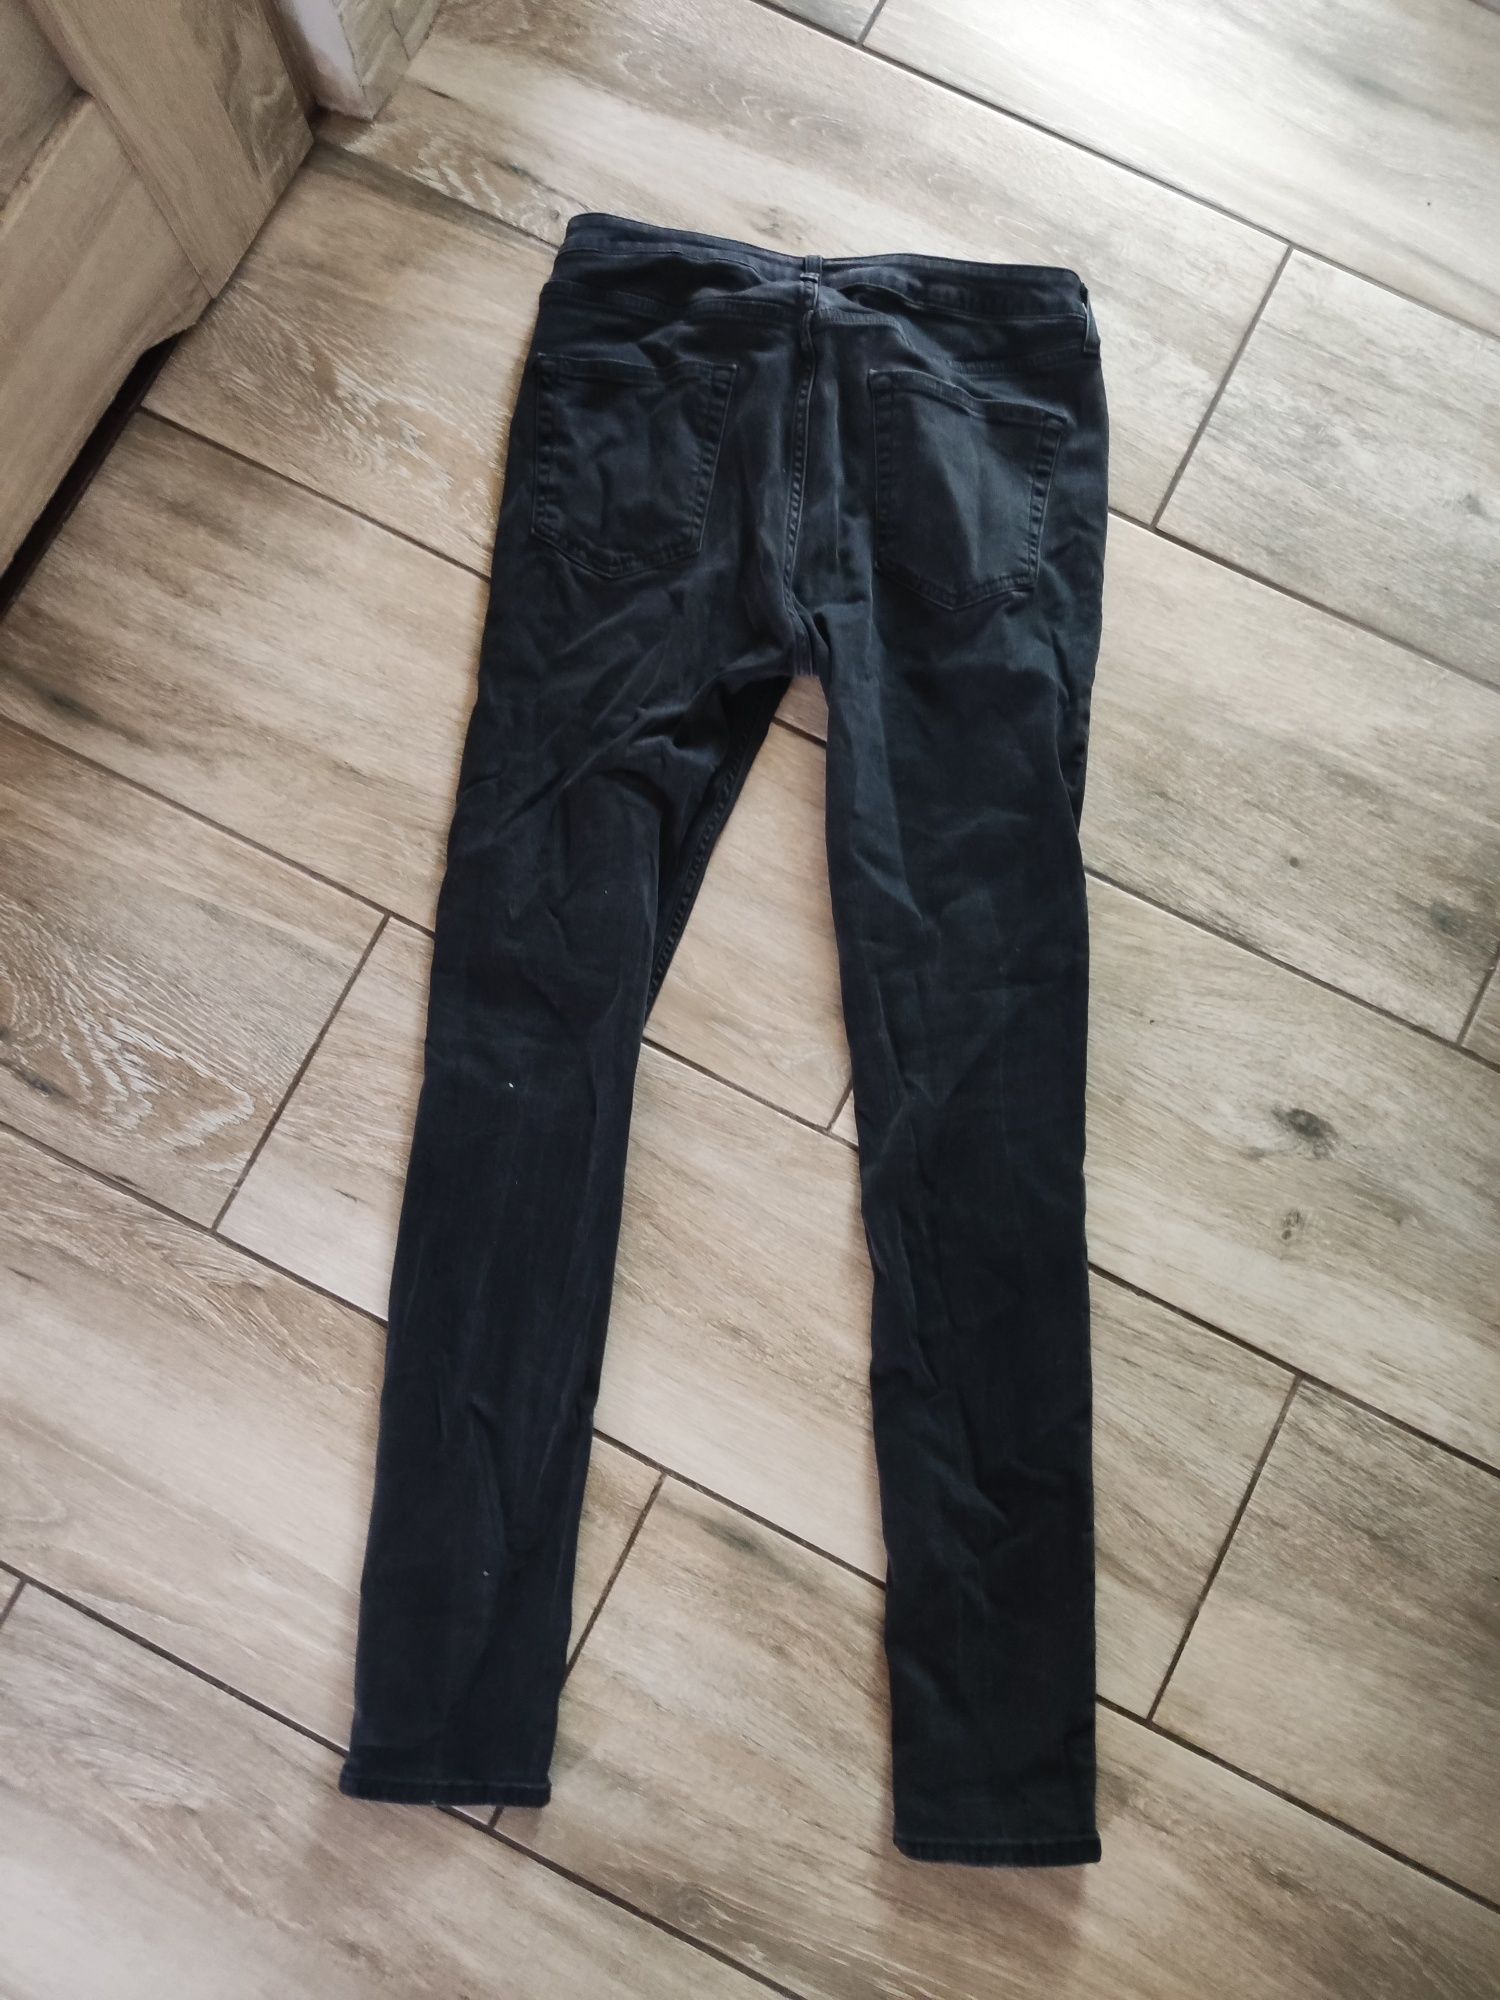 Spodnie męskie jeansowe rozmiar 32/32 topman